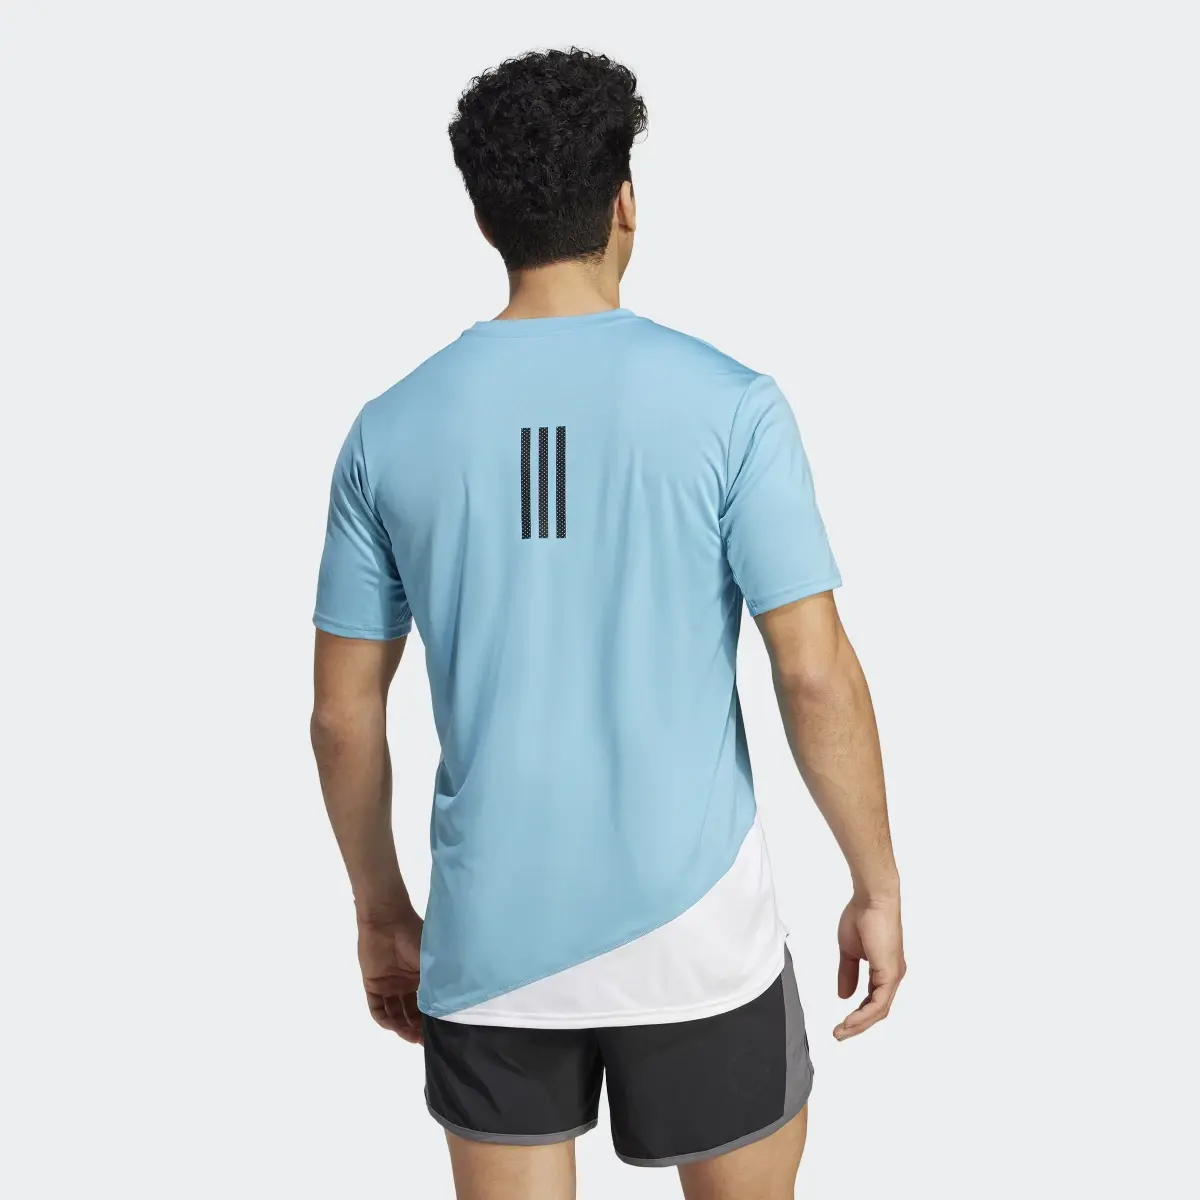 Adidas T-shirt de running Made to be Remade. 3